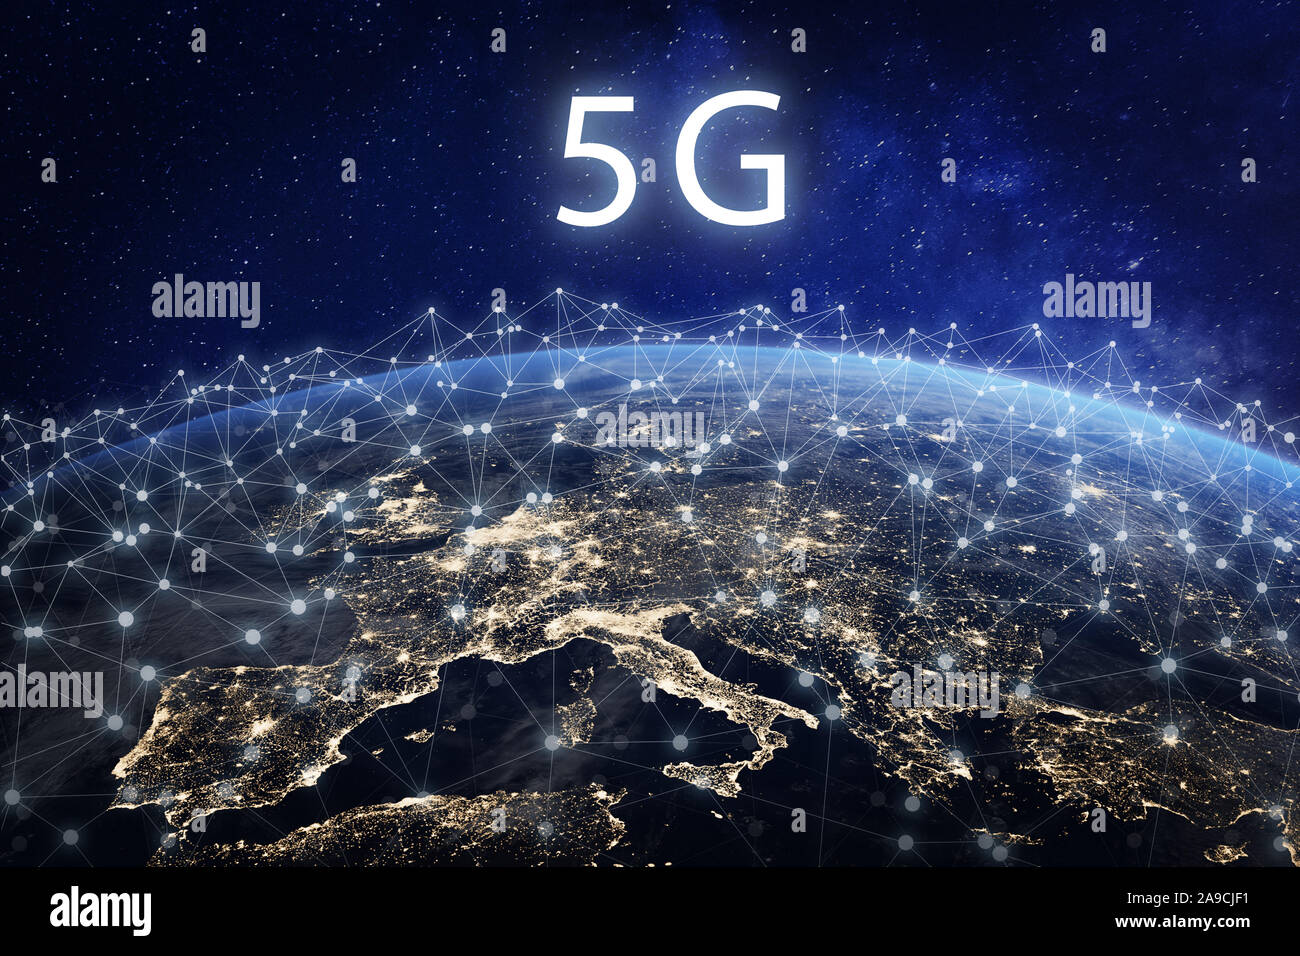 5G Mobile Telecommunication Network in Europa für Schnelle drahtlose Datenverbindung von Smartphones zu Internet, fünfte Generation Radio wave Commun Stockfoto